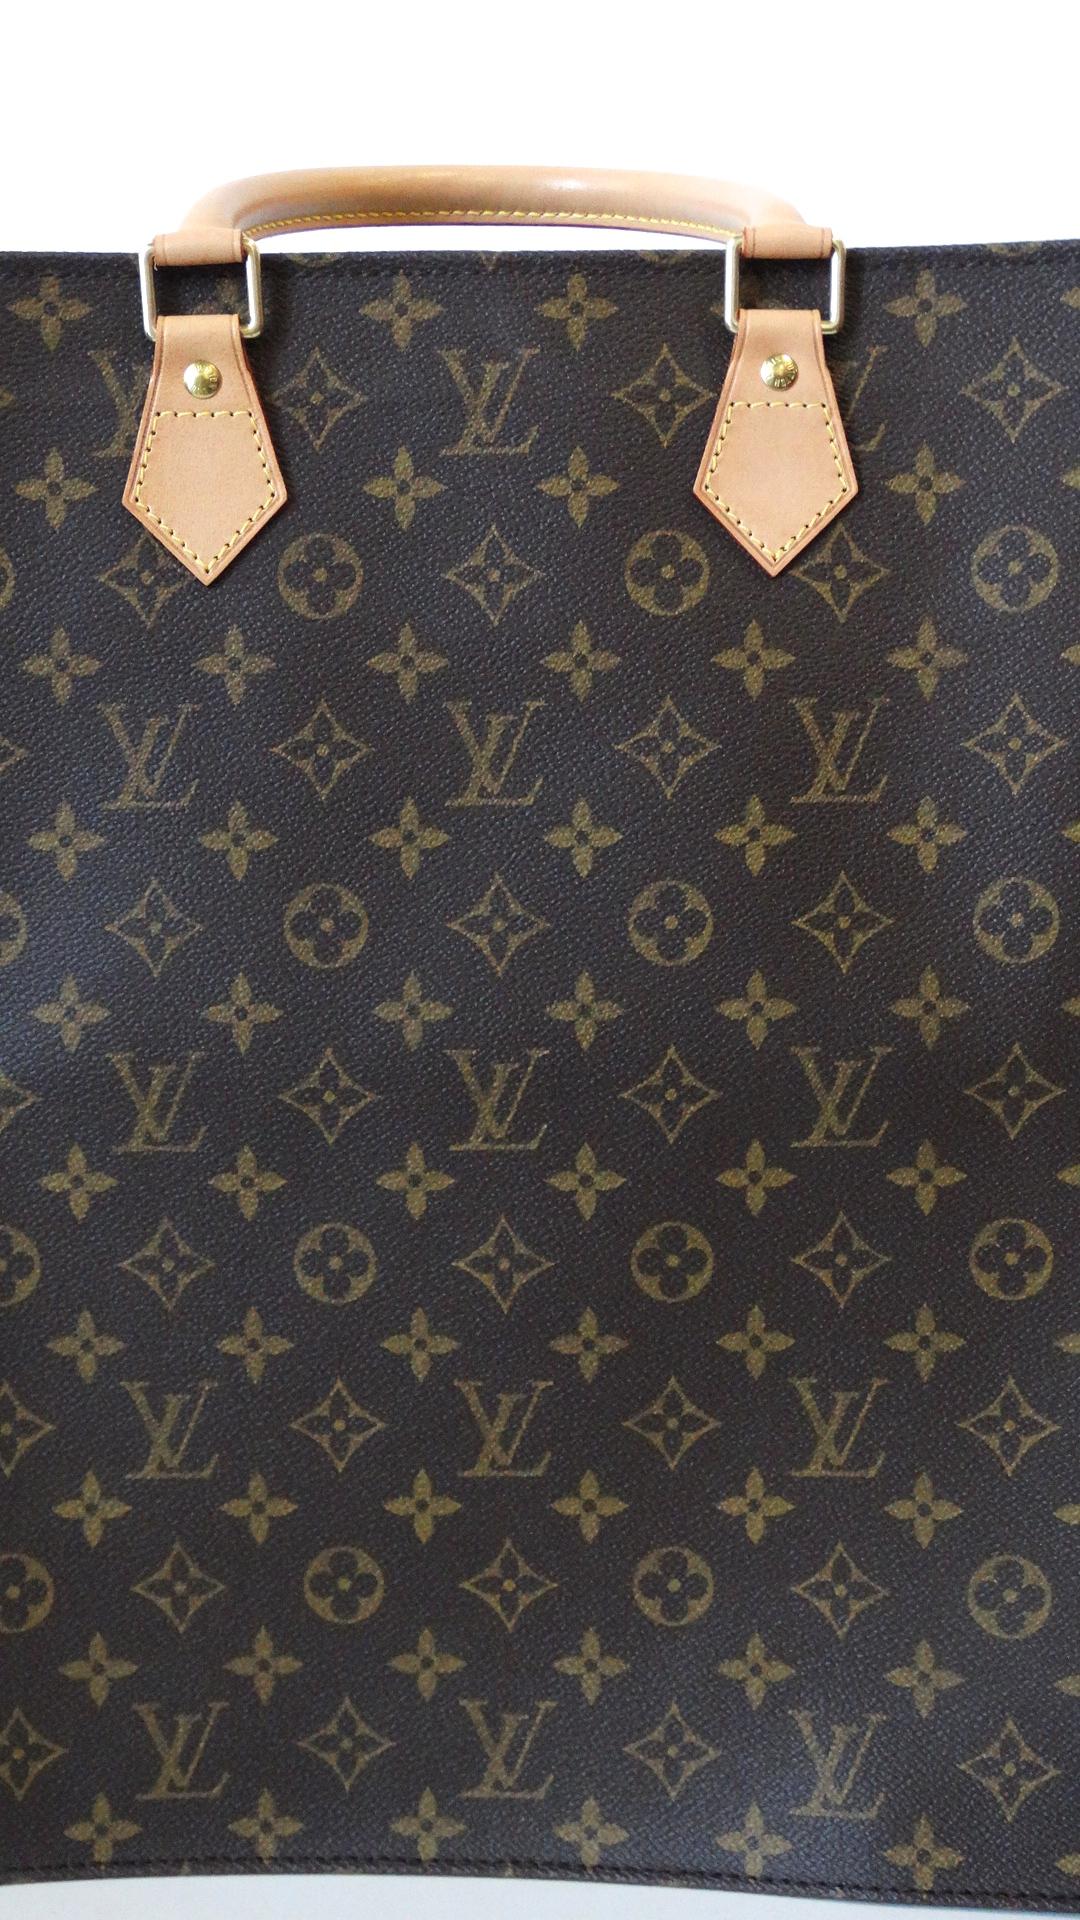  Louis Vuitton 2007 Monogram Sac Plat 3